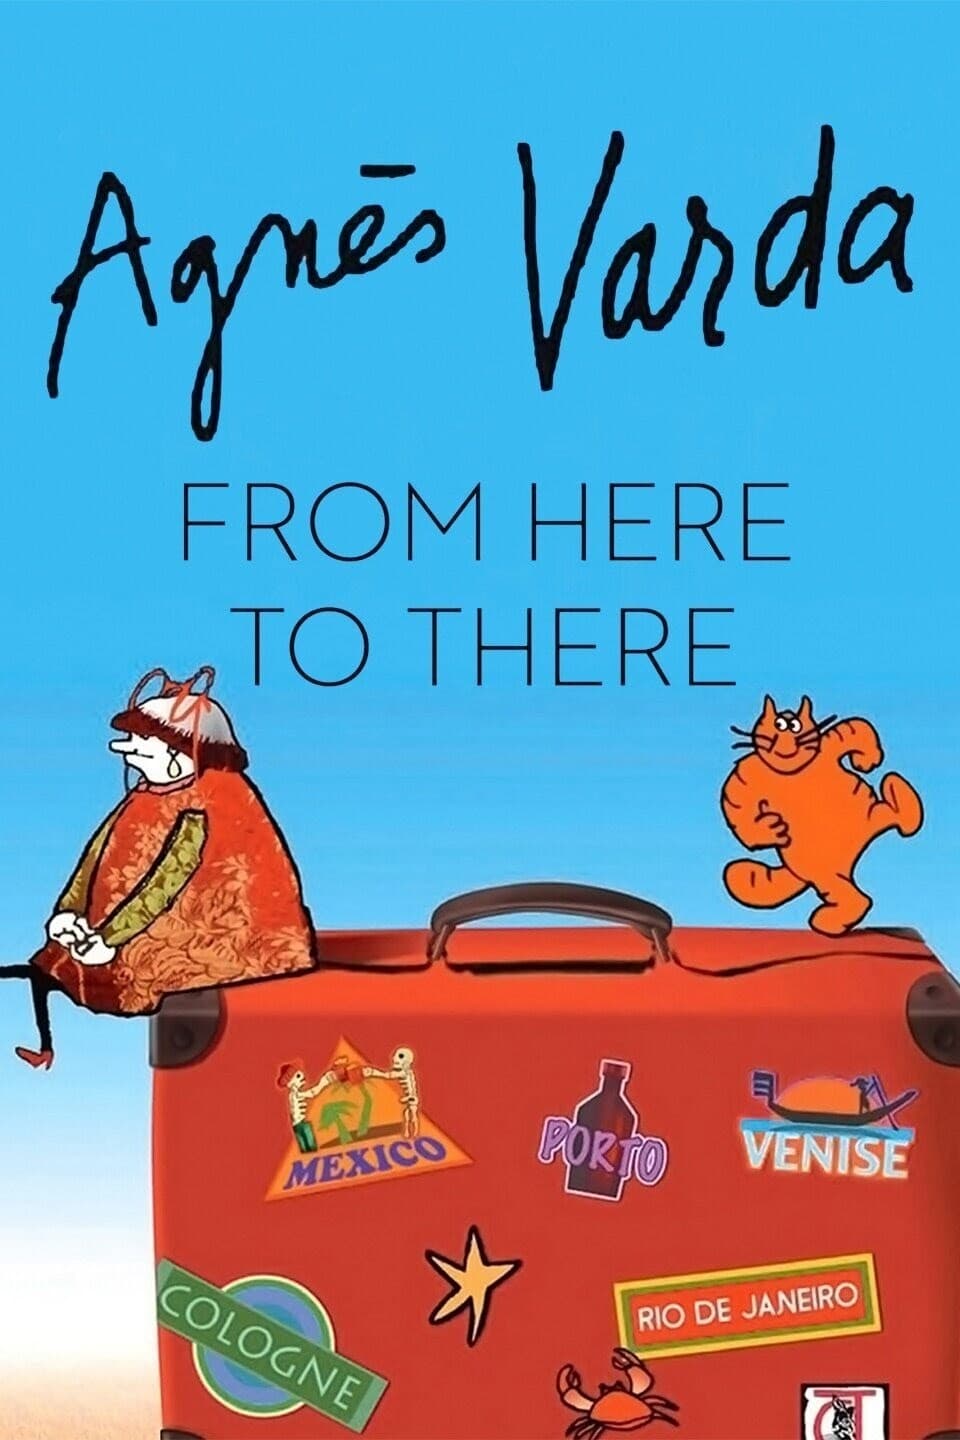 Agnès de ci de là Varda TV Shows About Travelogue